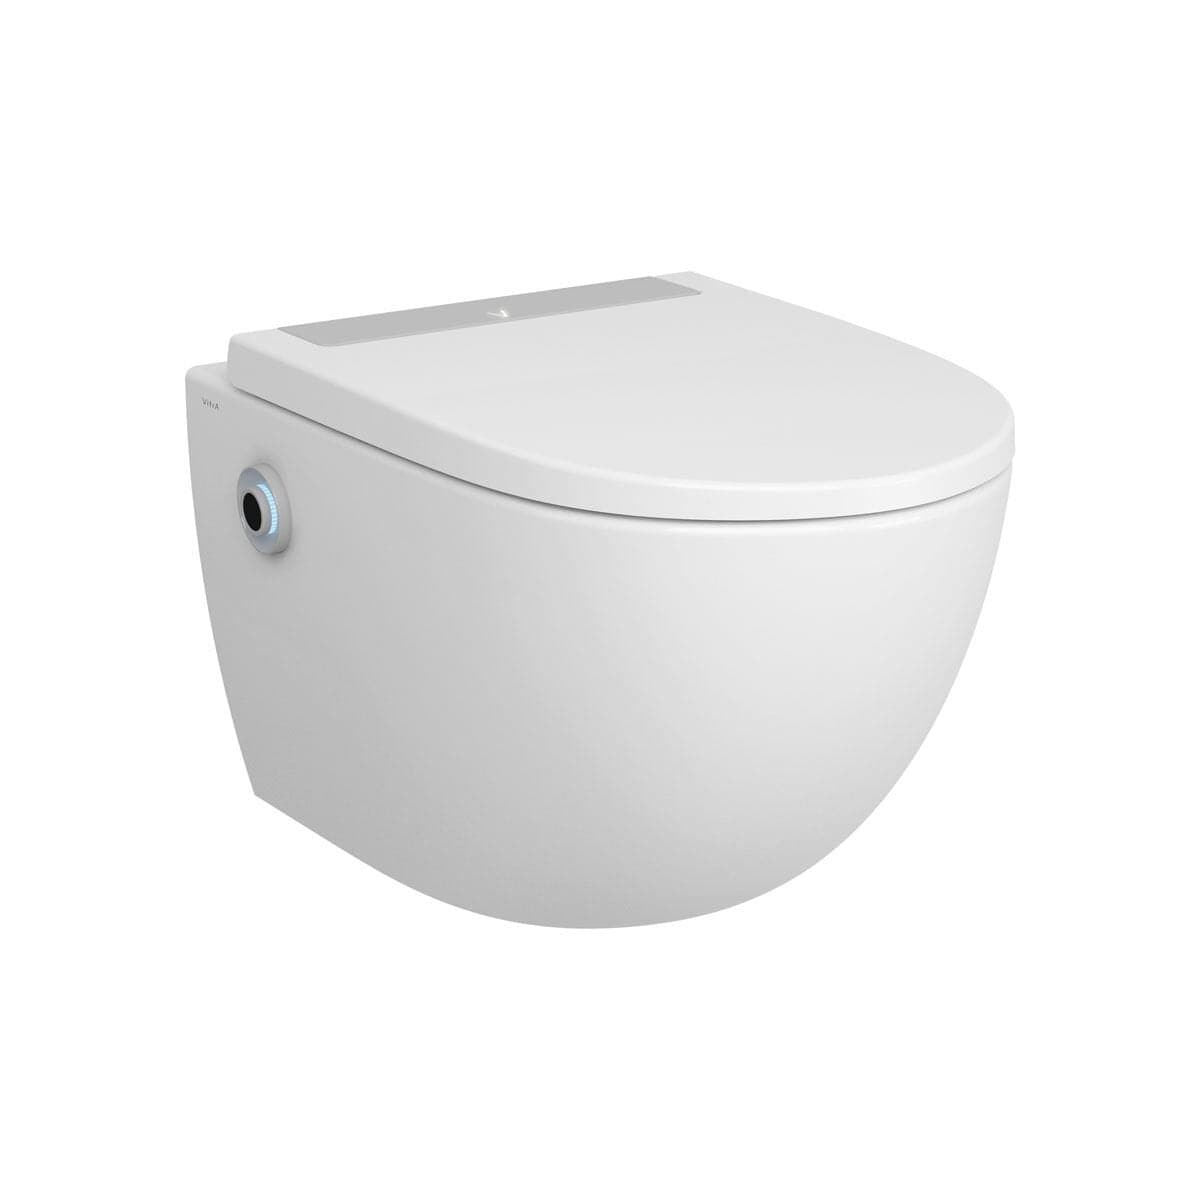 VitrA Sento kontaktloses integriertes Bidet und kontaktlose WC - Sitzfunktion - mit spülrand